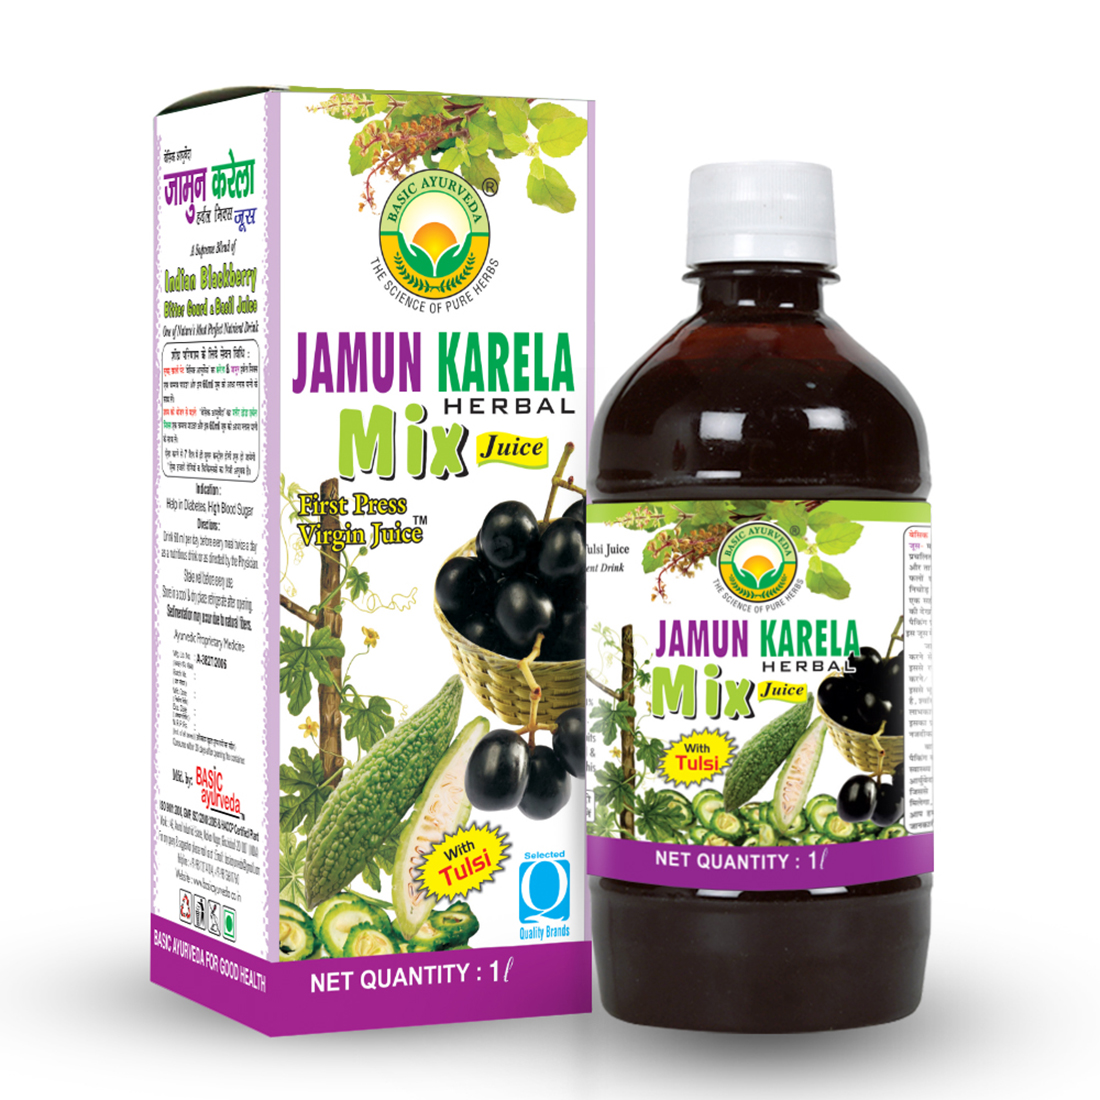 Jamun Karela Herbal Mix Juice